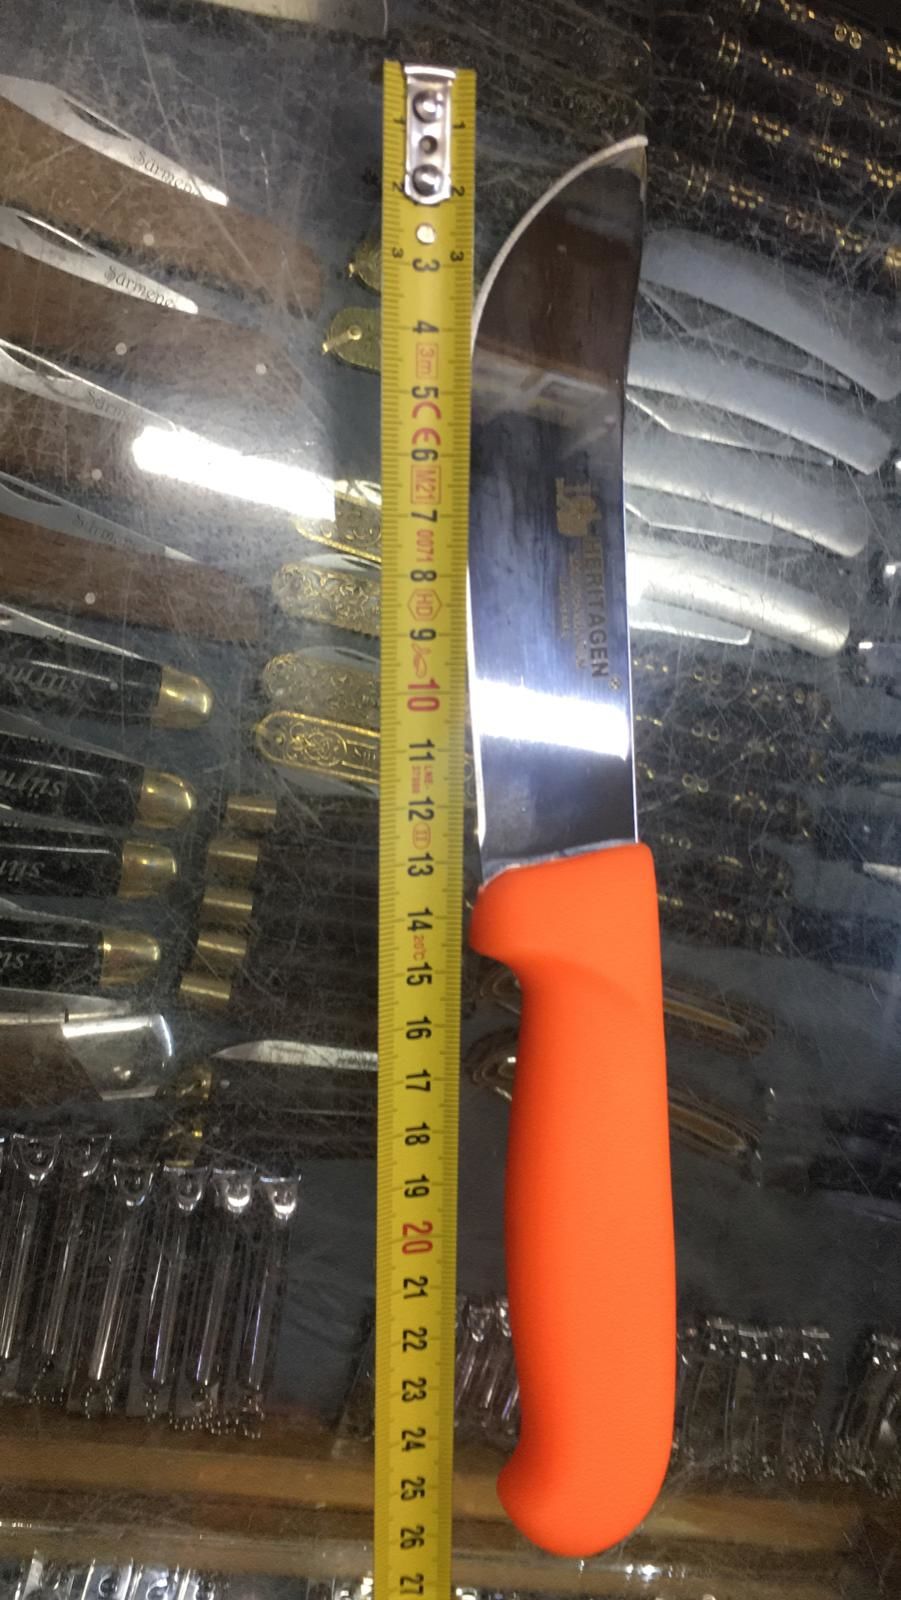 Heritagen Pala 26 cm Kanallı Bıçak Karkas Bıçağı (Turuncu)